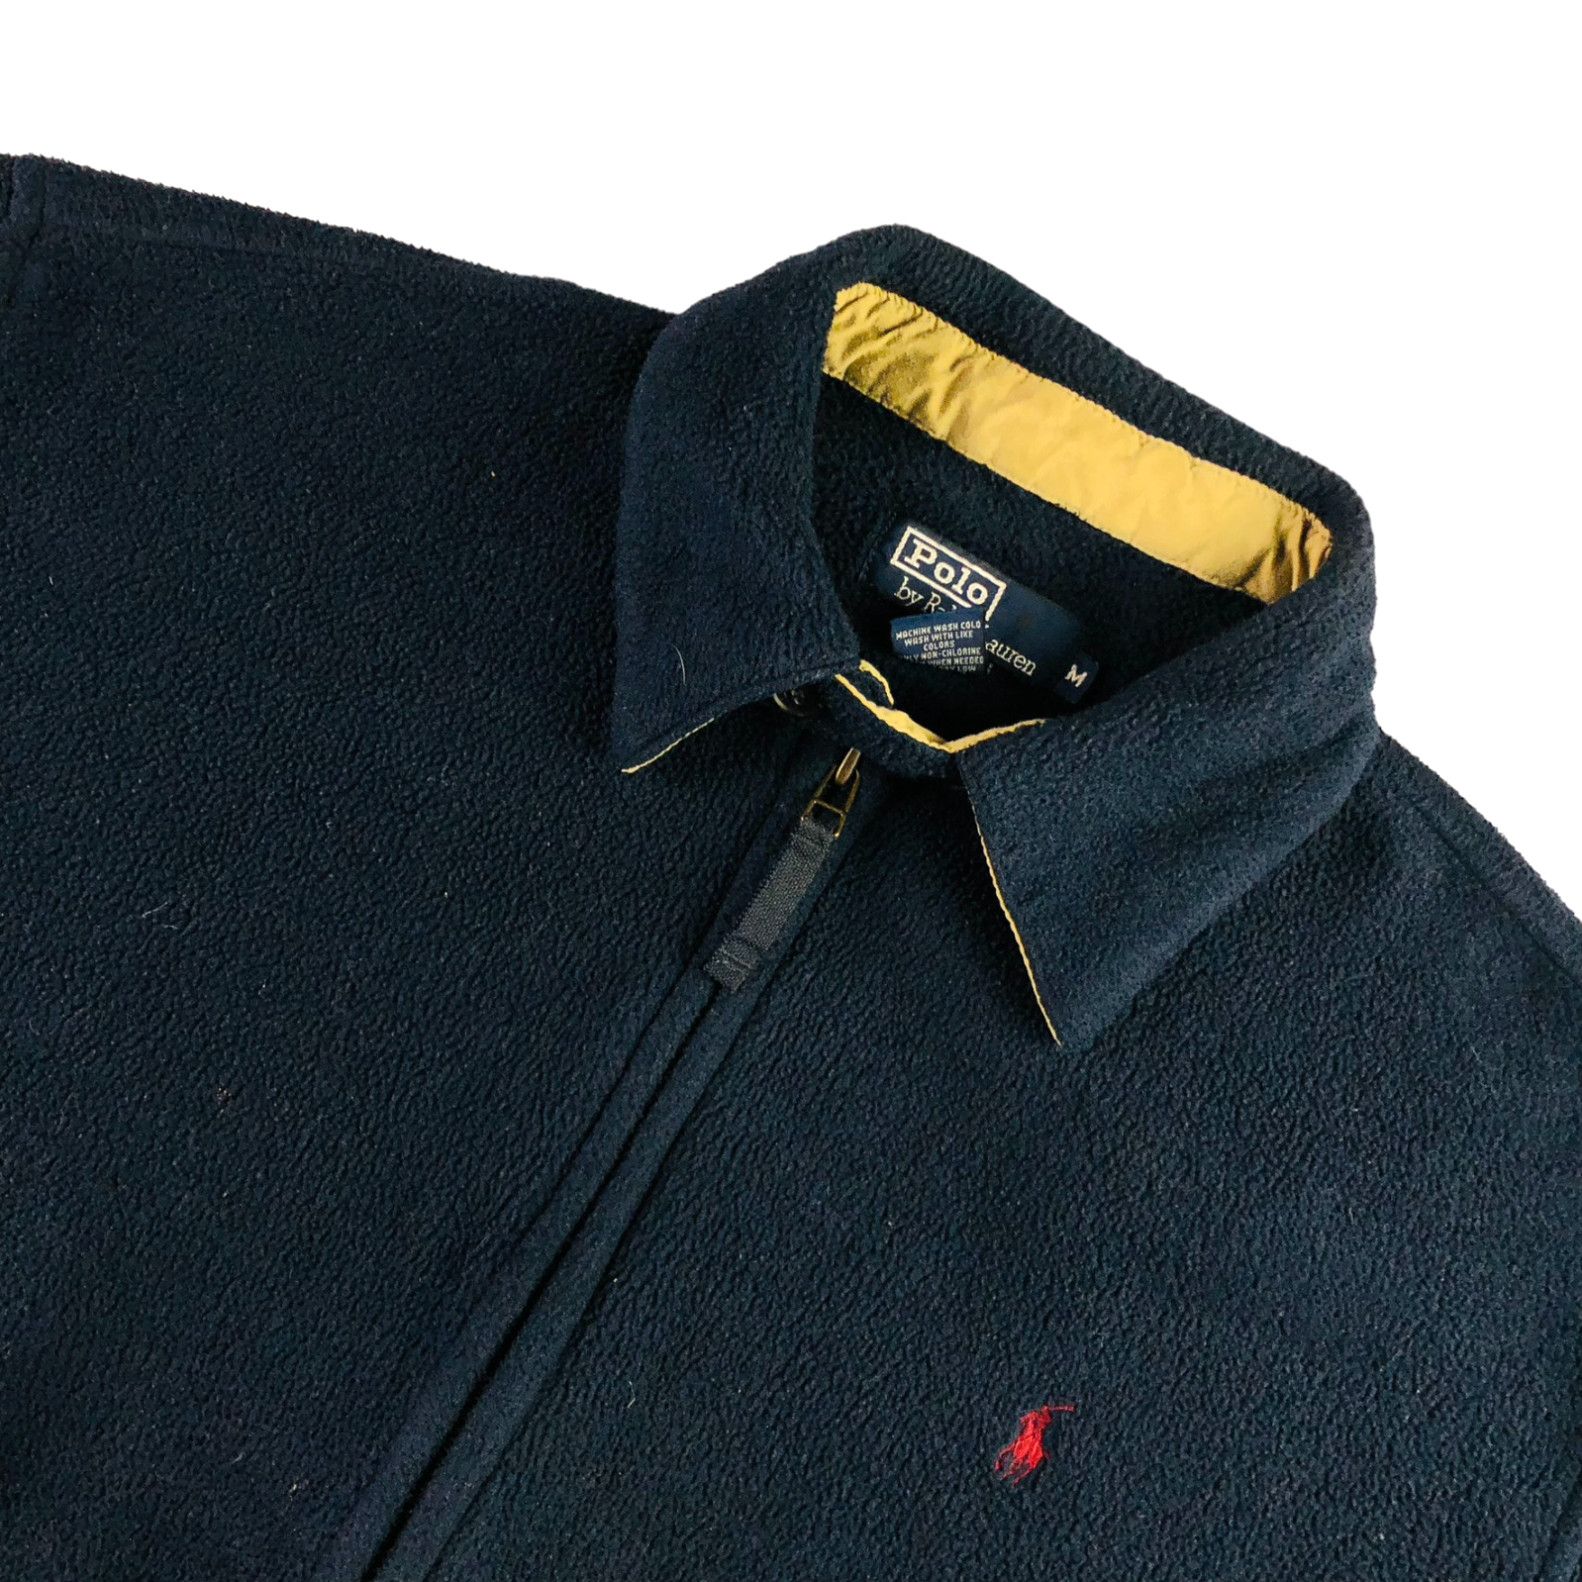 Men's Fleece Lined Rain Windbreaker Jacket